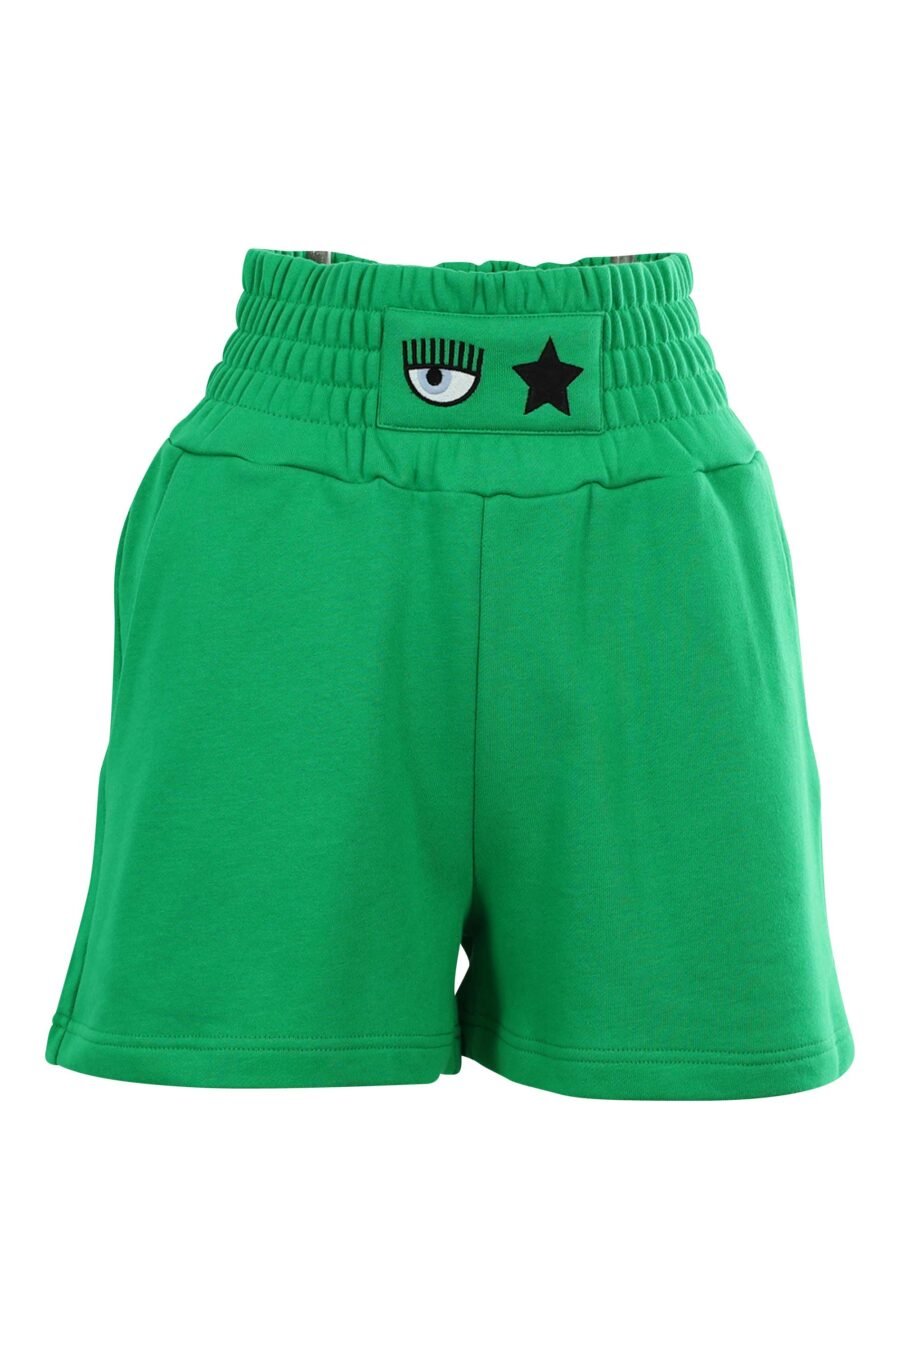 Pantalón de chándal verde corto con logo ojo y estrella - 8052672415479